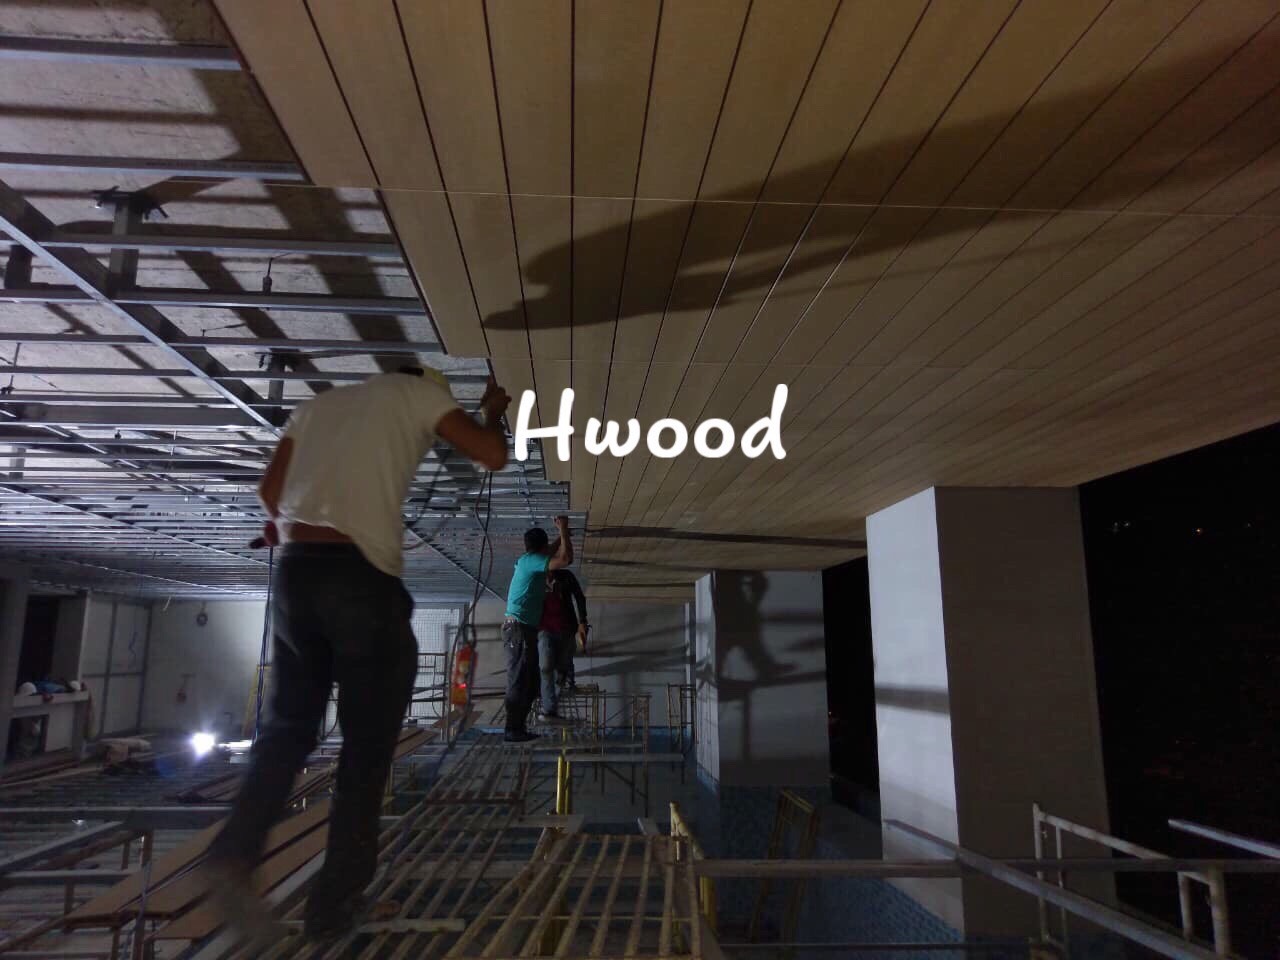 go-nhua-composite-hwood